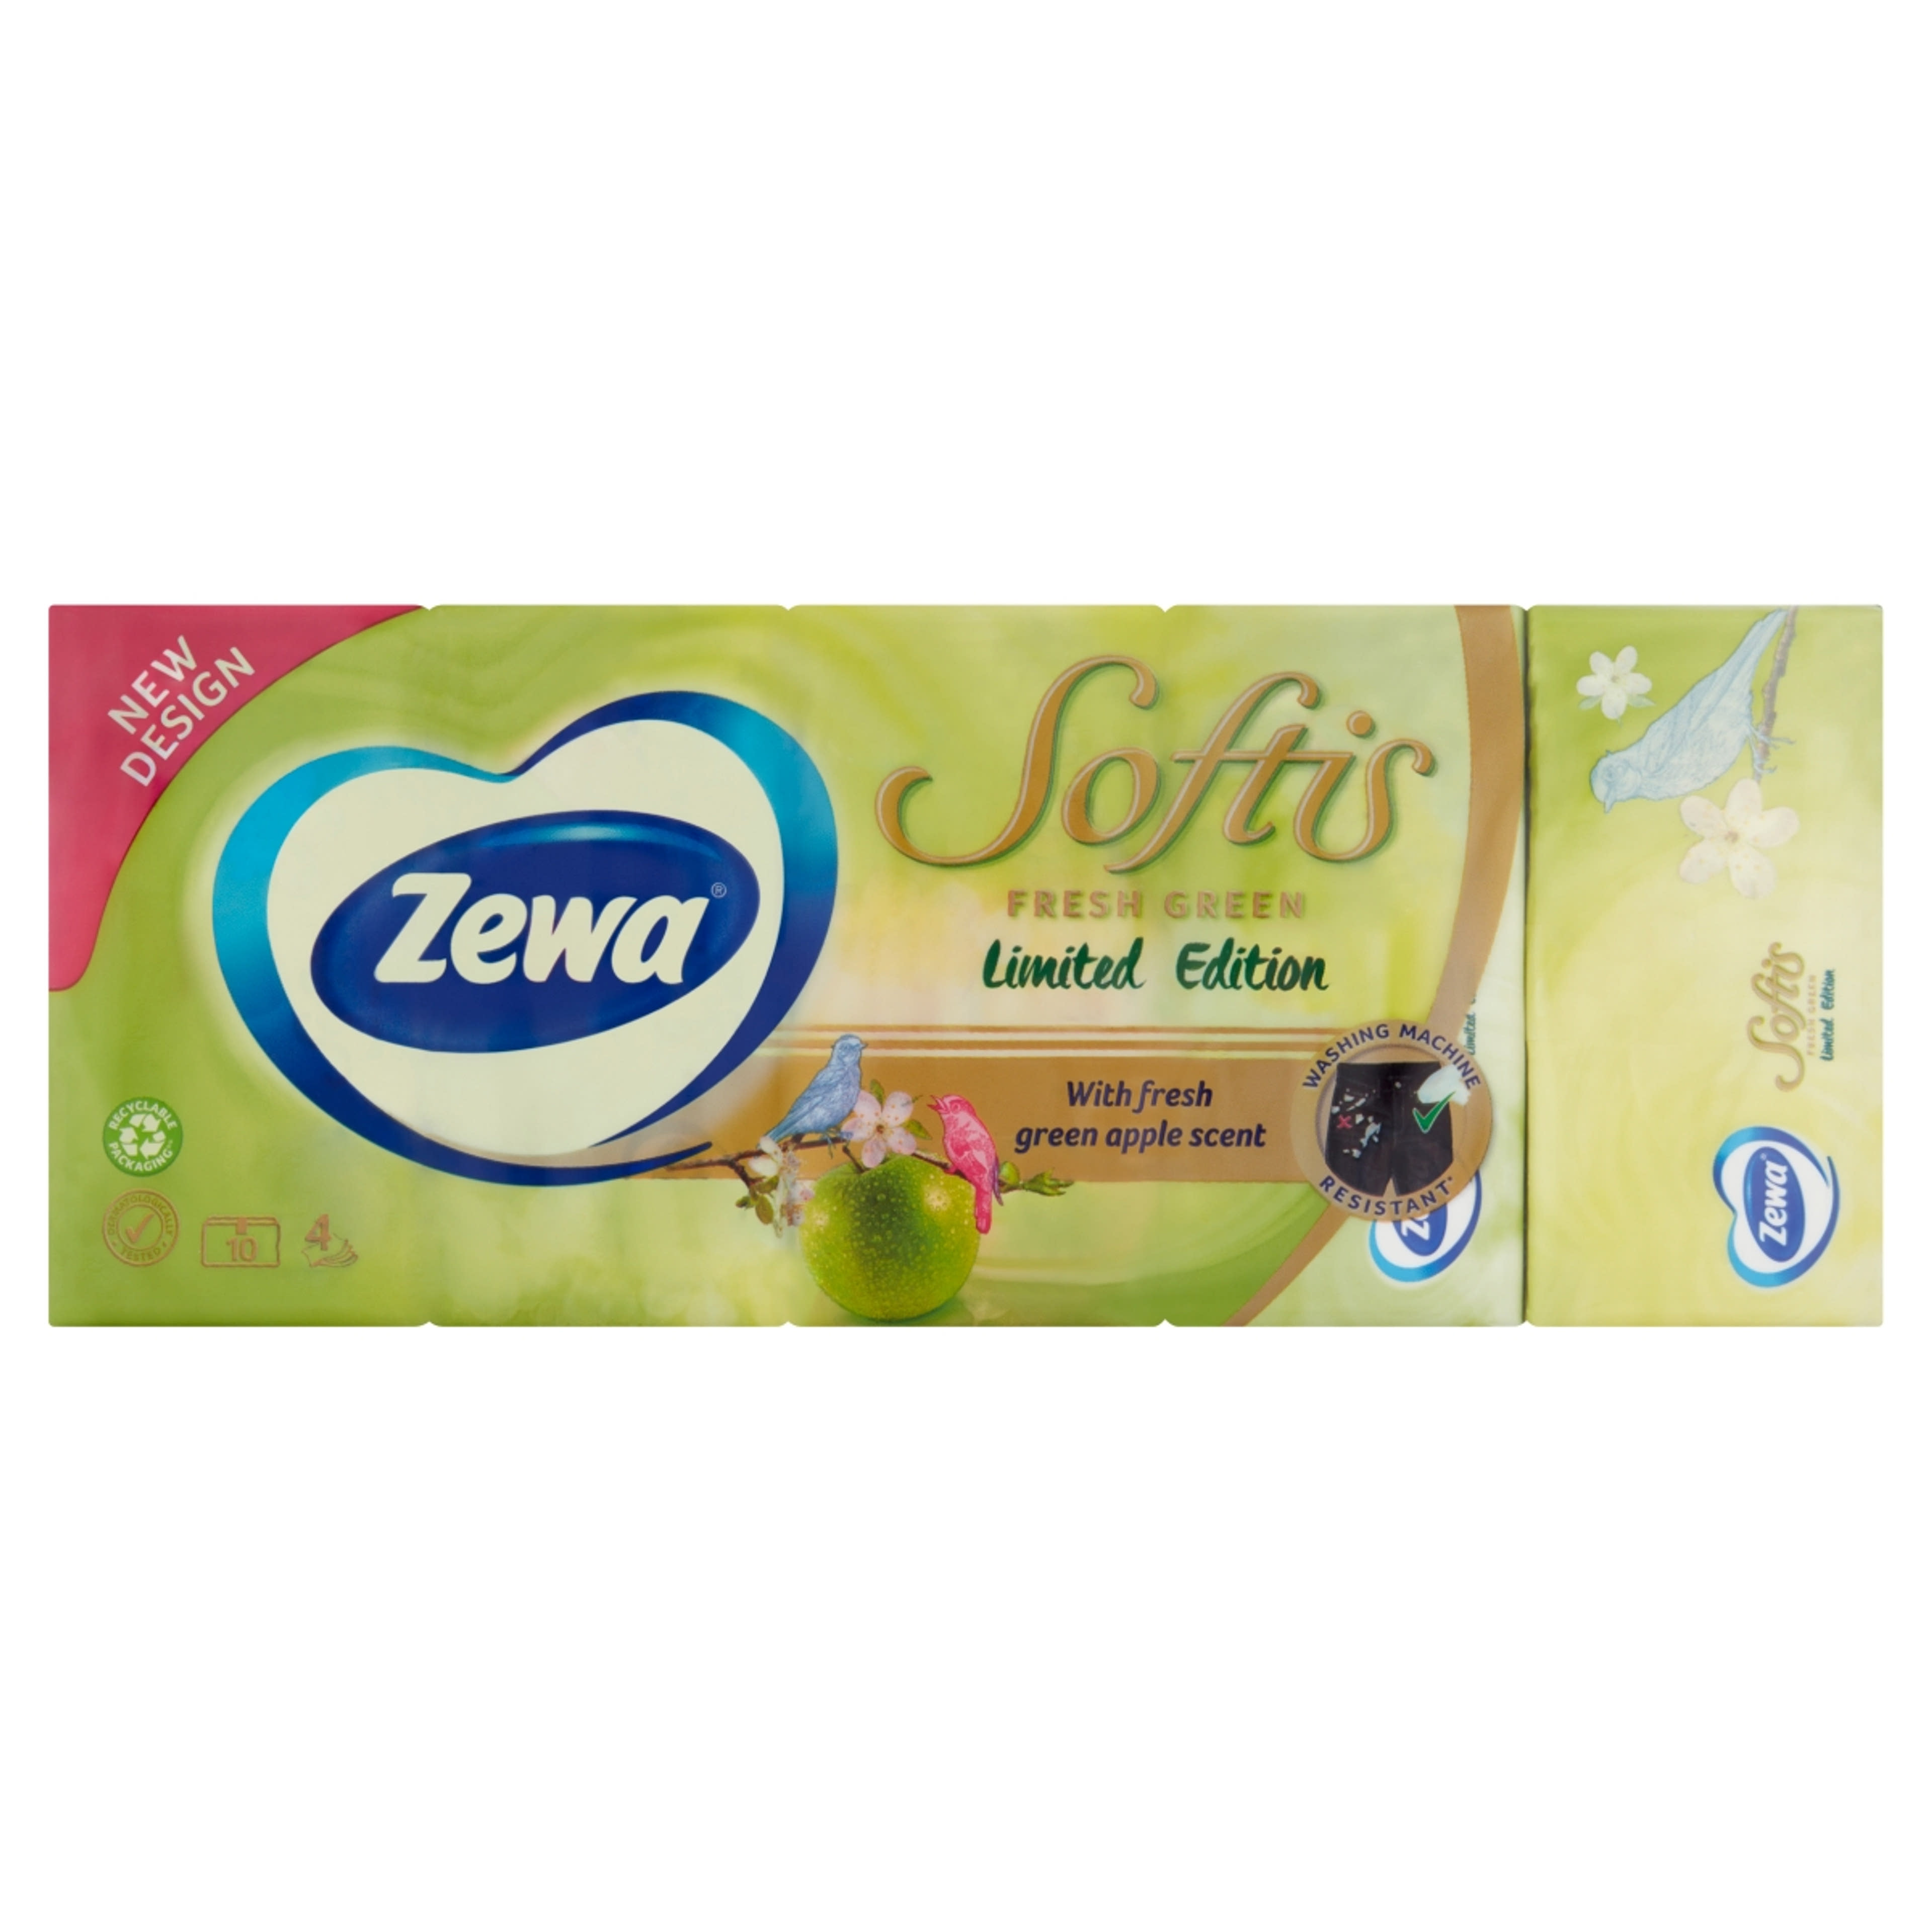 Zewa softis papírzsebkendő limited edition 4 rétegű 10x9 - 90 db-1